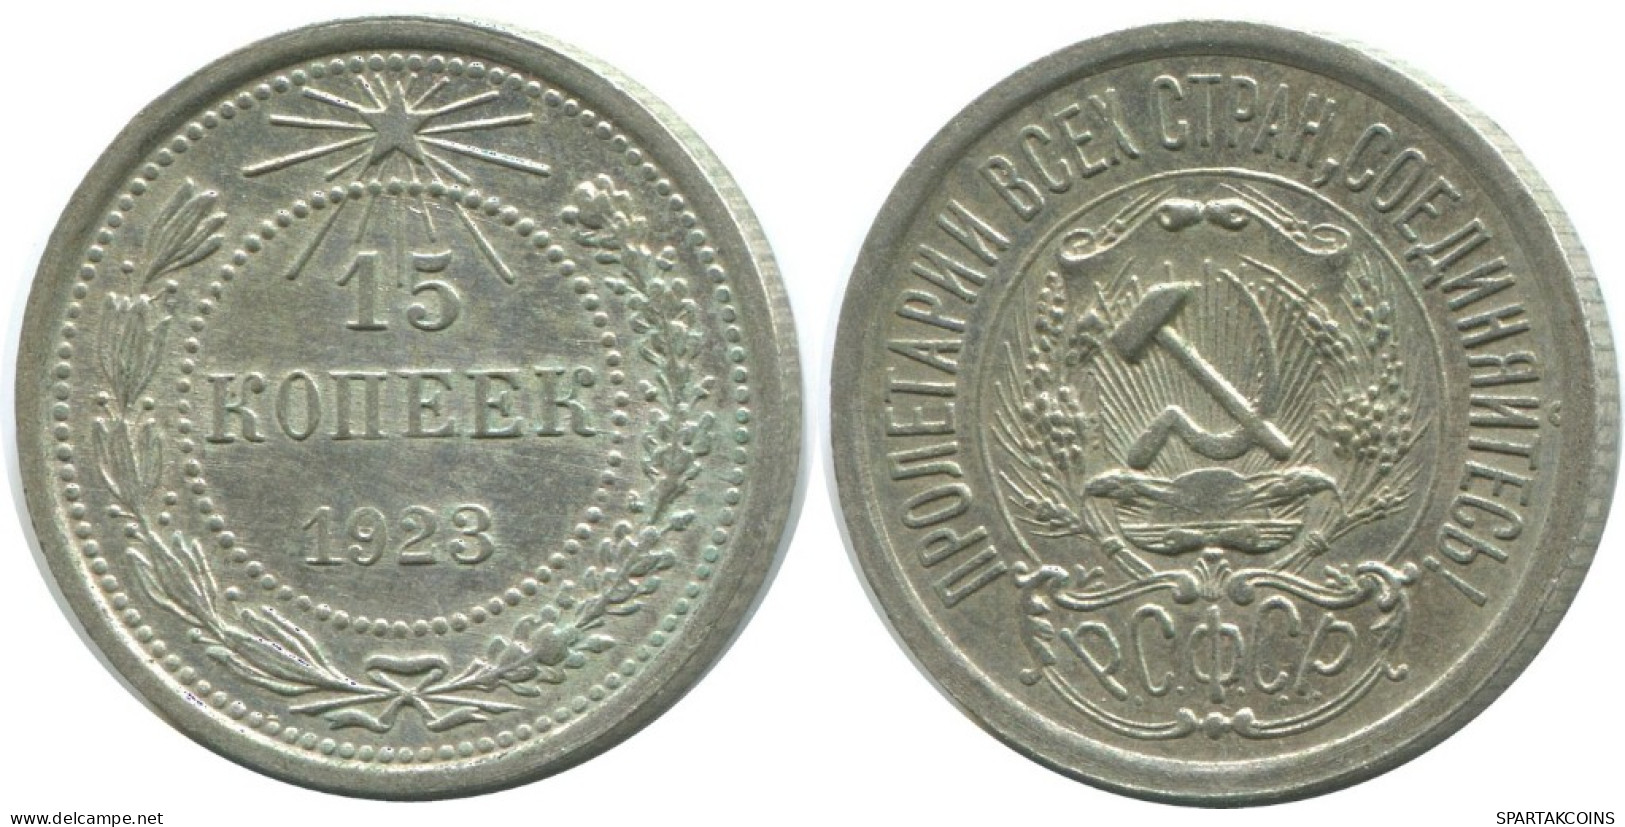 15 KOPEKS 1923 RUSSLAND RUSSIA RSFSR SILBER Münze HIGH GRADE #AF091.4.D.A - Russia